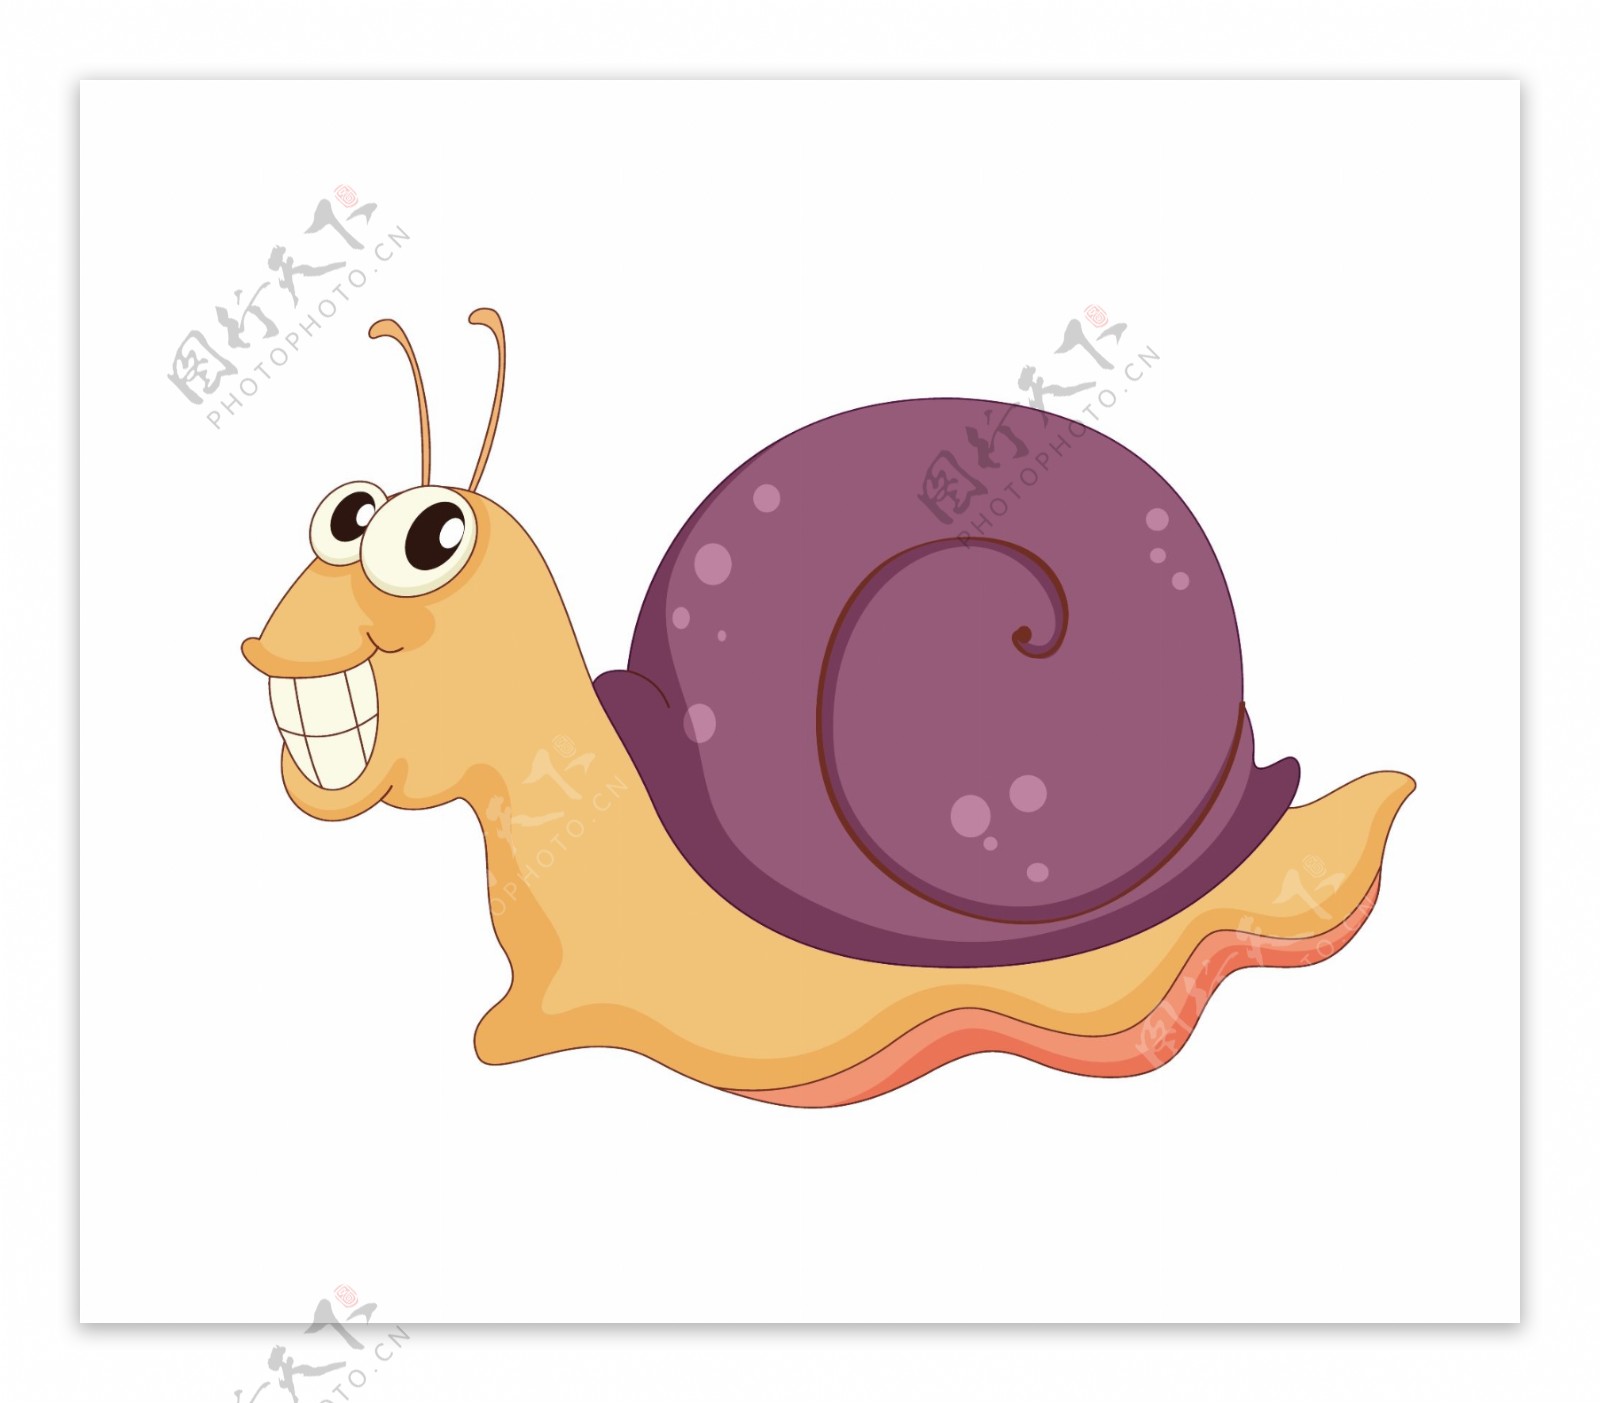 幸福蜗牛家族卡通矢量图卡通风格的插图 向量例证. 插画 包括有 婴孩, 夹子, 例证, 叶子, 系列, 动画片 - 225823651